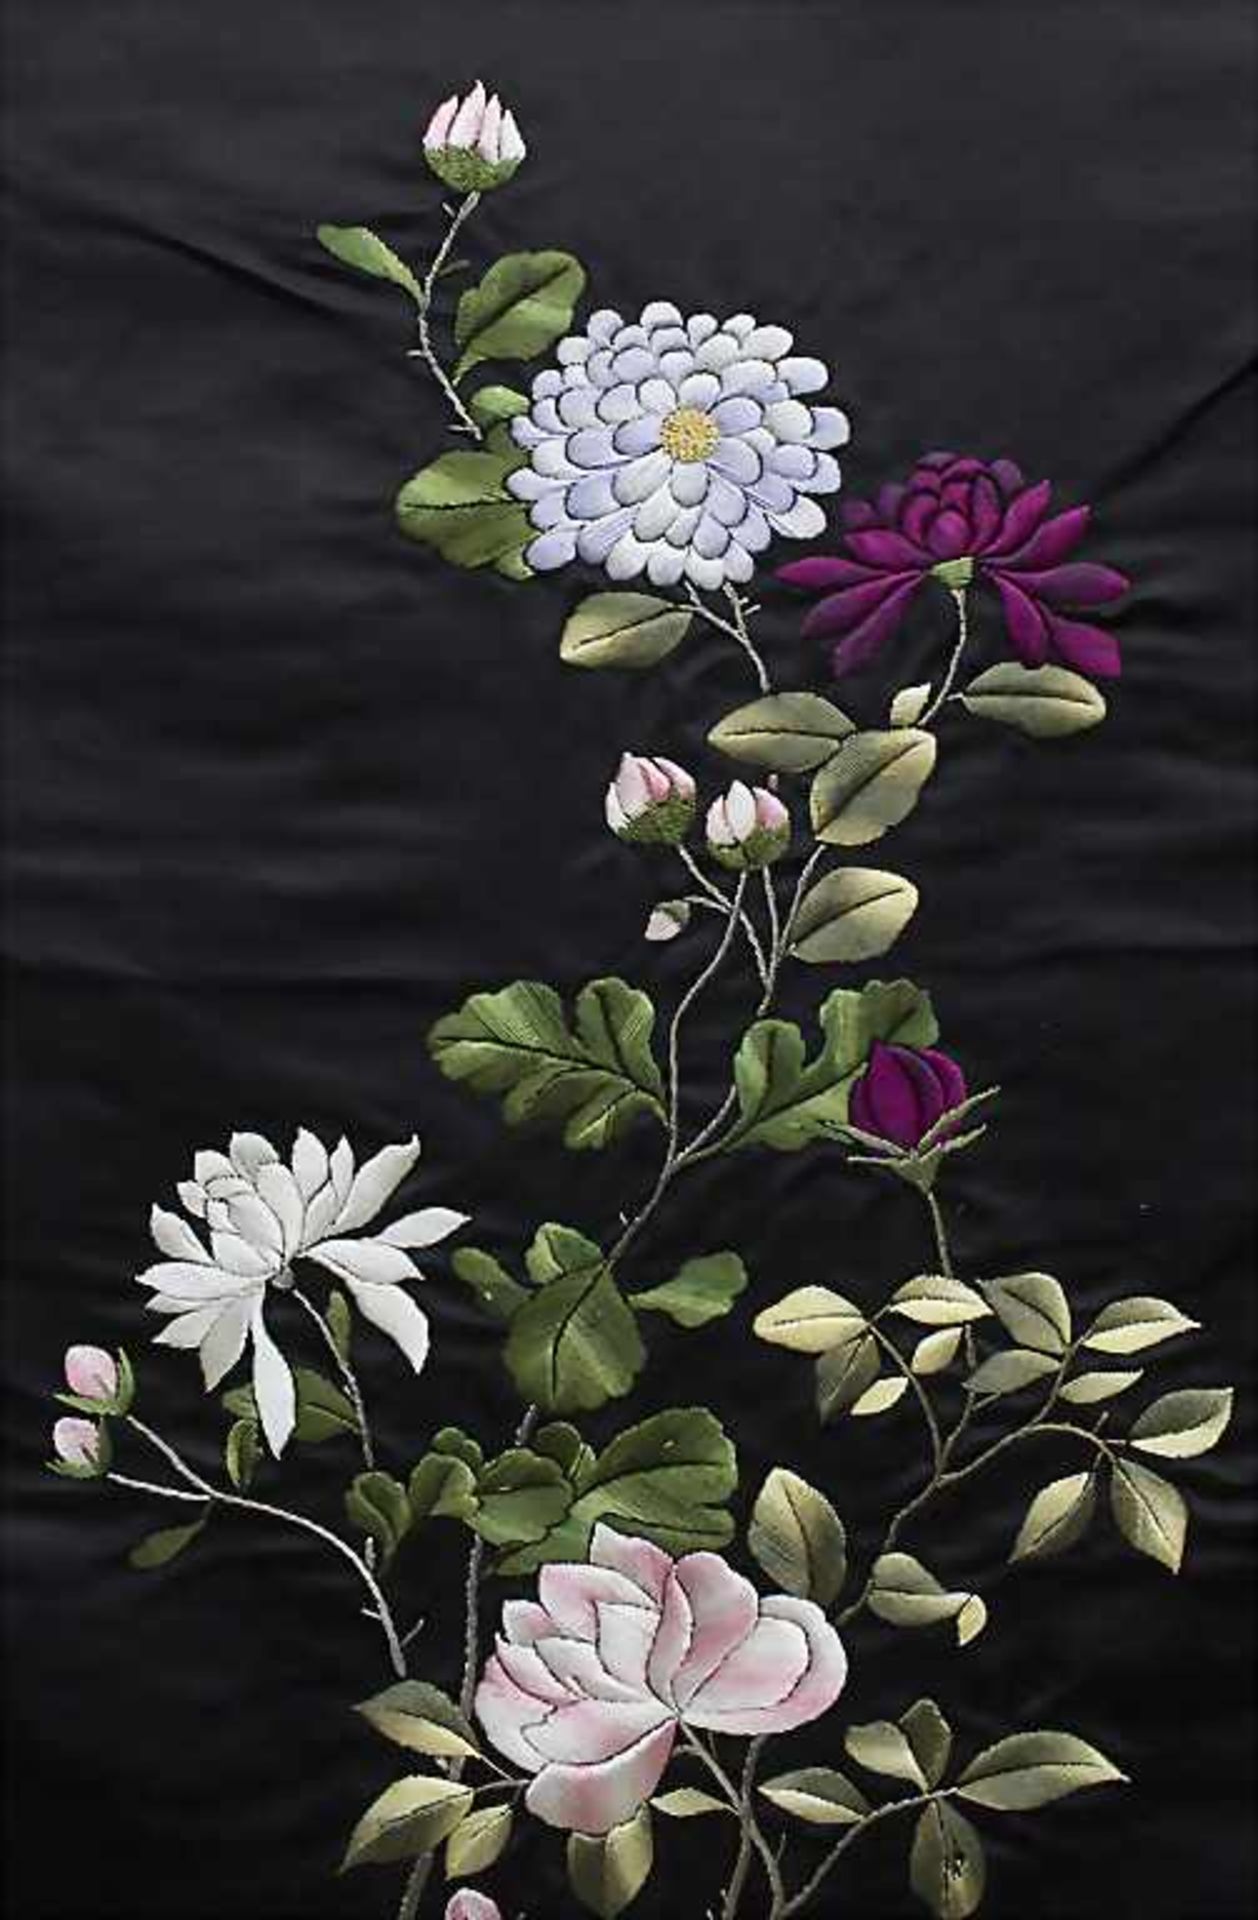 Seiden-Wandbehang 'Blumensträucher' / A silk wall hanging 'Flower shrubs', China, 1. Hälfte 20. Jh. - Bild 2 aus 3